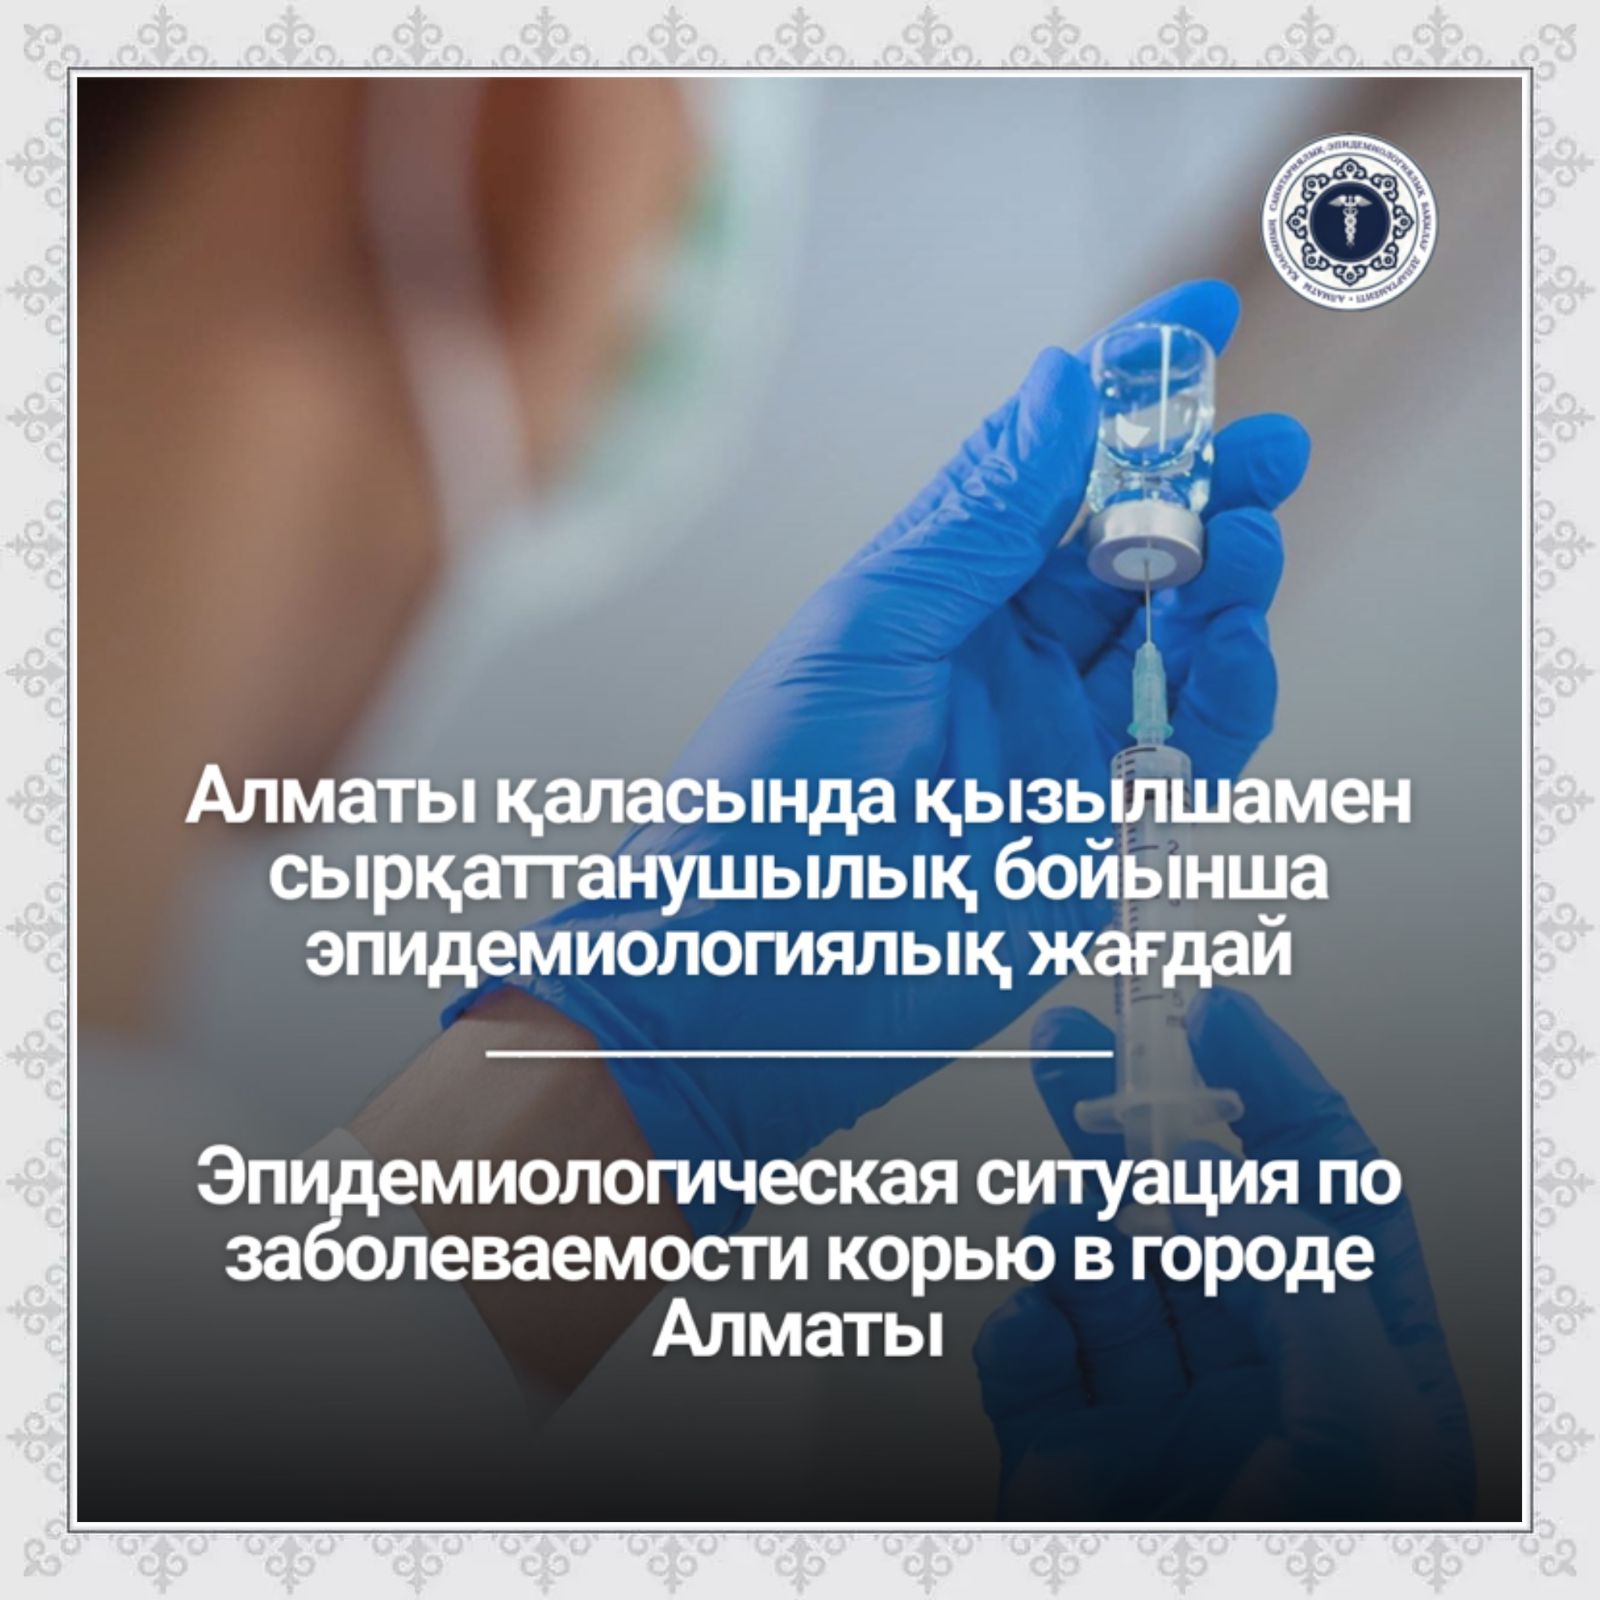 Алматы қаласында қызылшамен сырқаттанушылық бойынша эпидемиологиялық жағдай